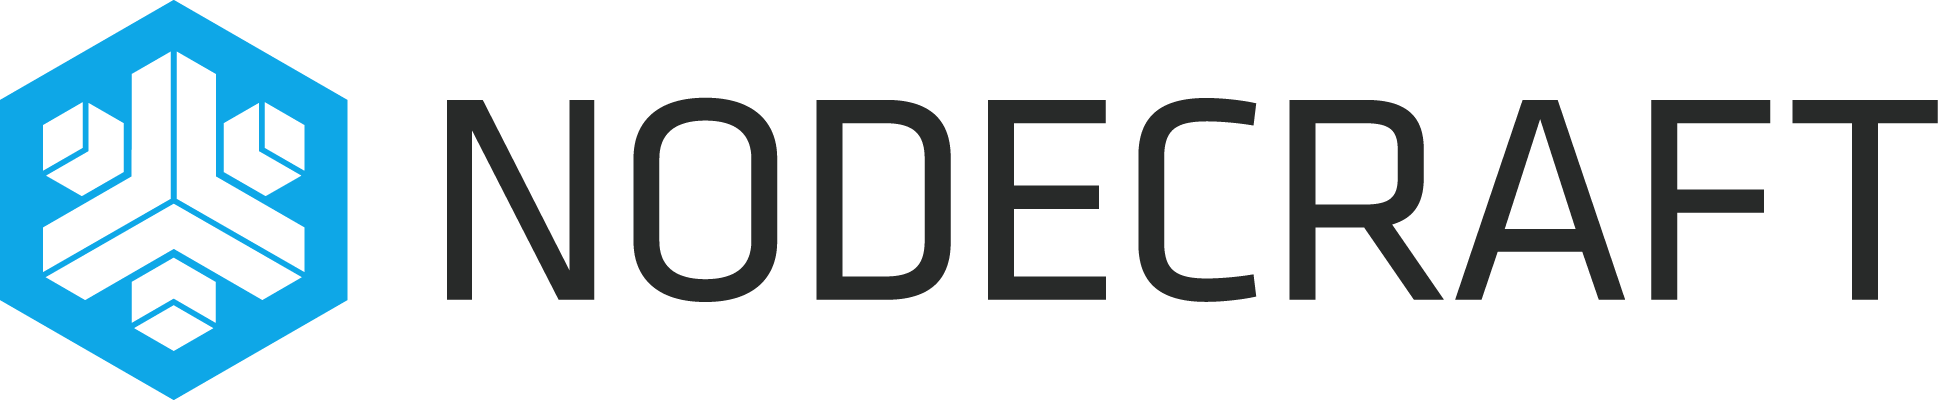 Nodecraft Sponsor